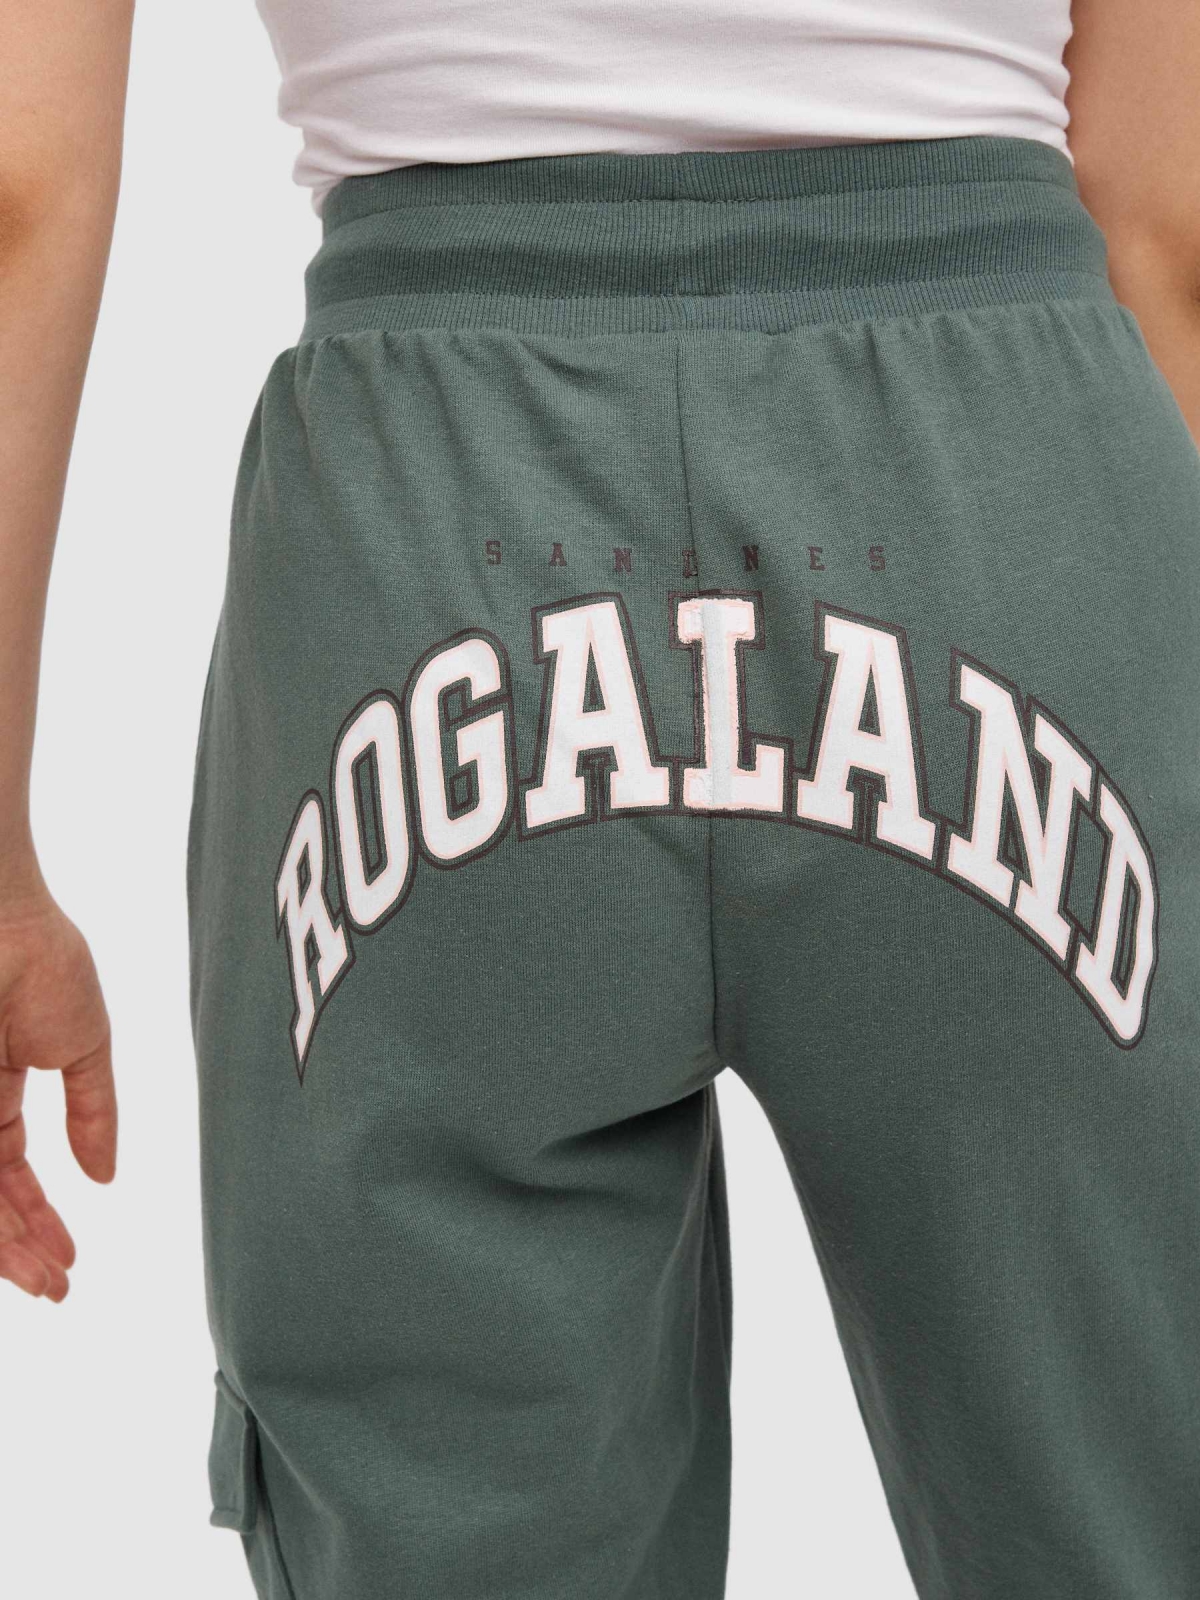 Rogaland jogger pants greyish green detail view